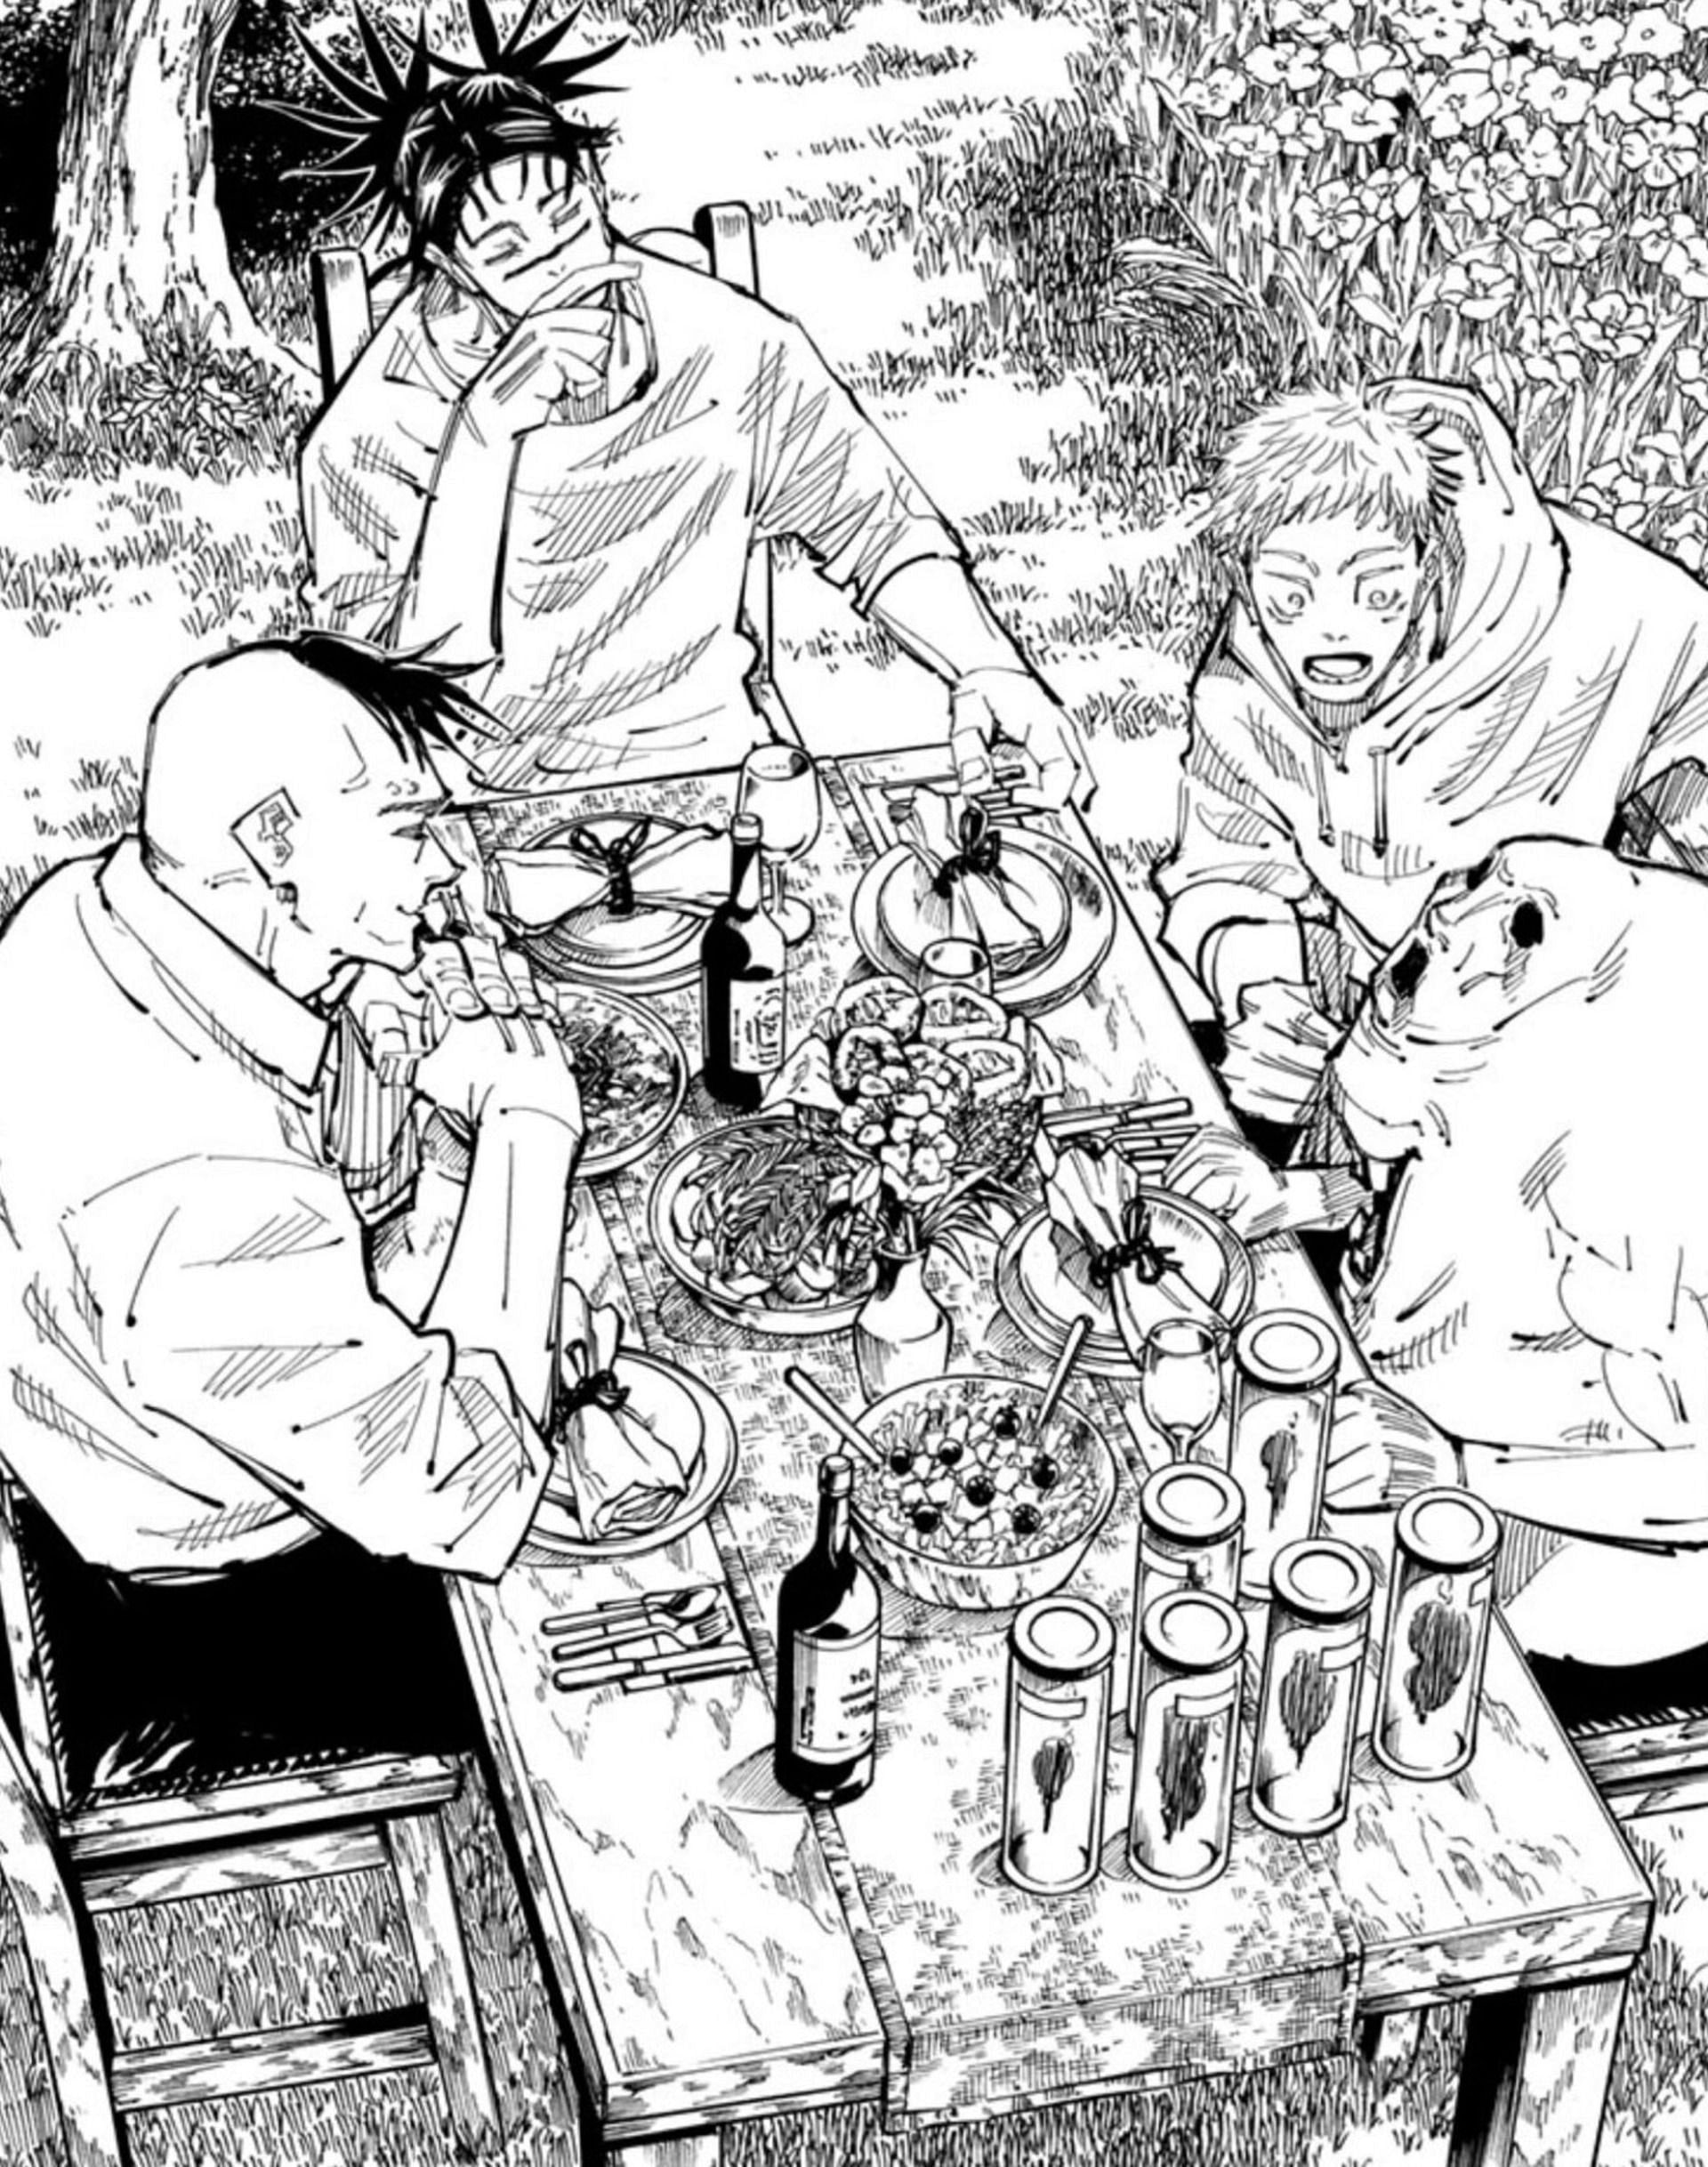 Kechizu, Choso, Yuji and Eso in Jujutsu Kaisen (Image via Gege Akutami, Shueisha)